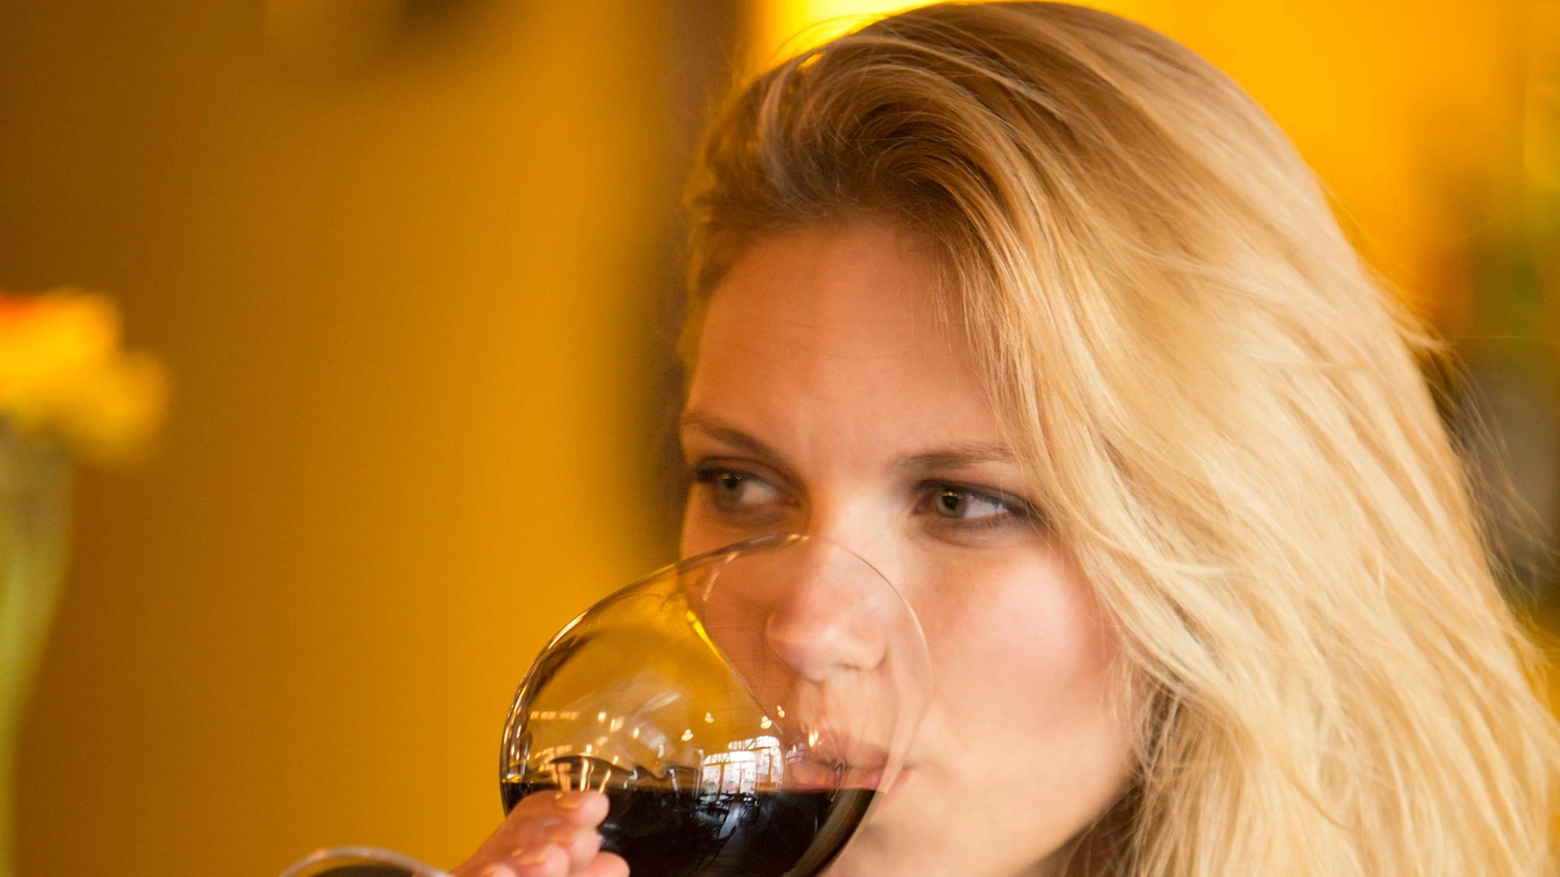 Una ragazza beve un bicchiere di vino